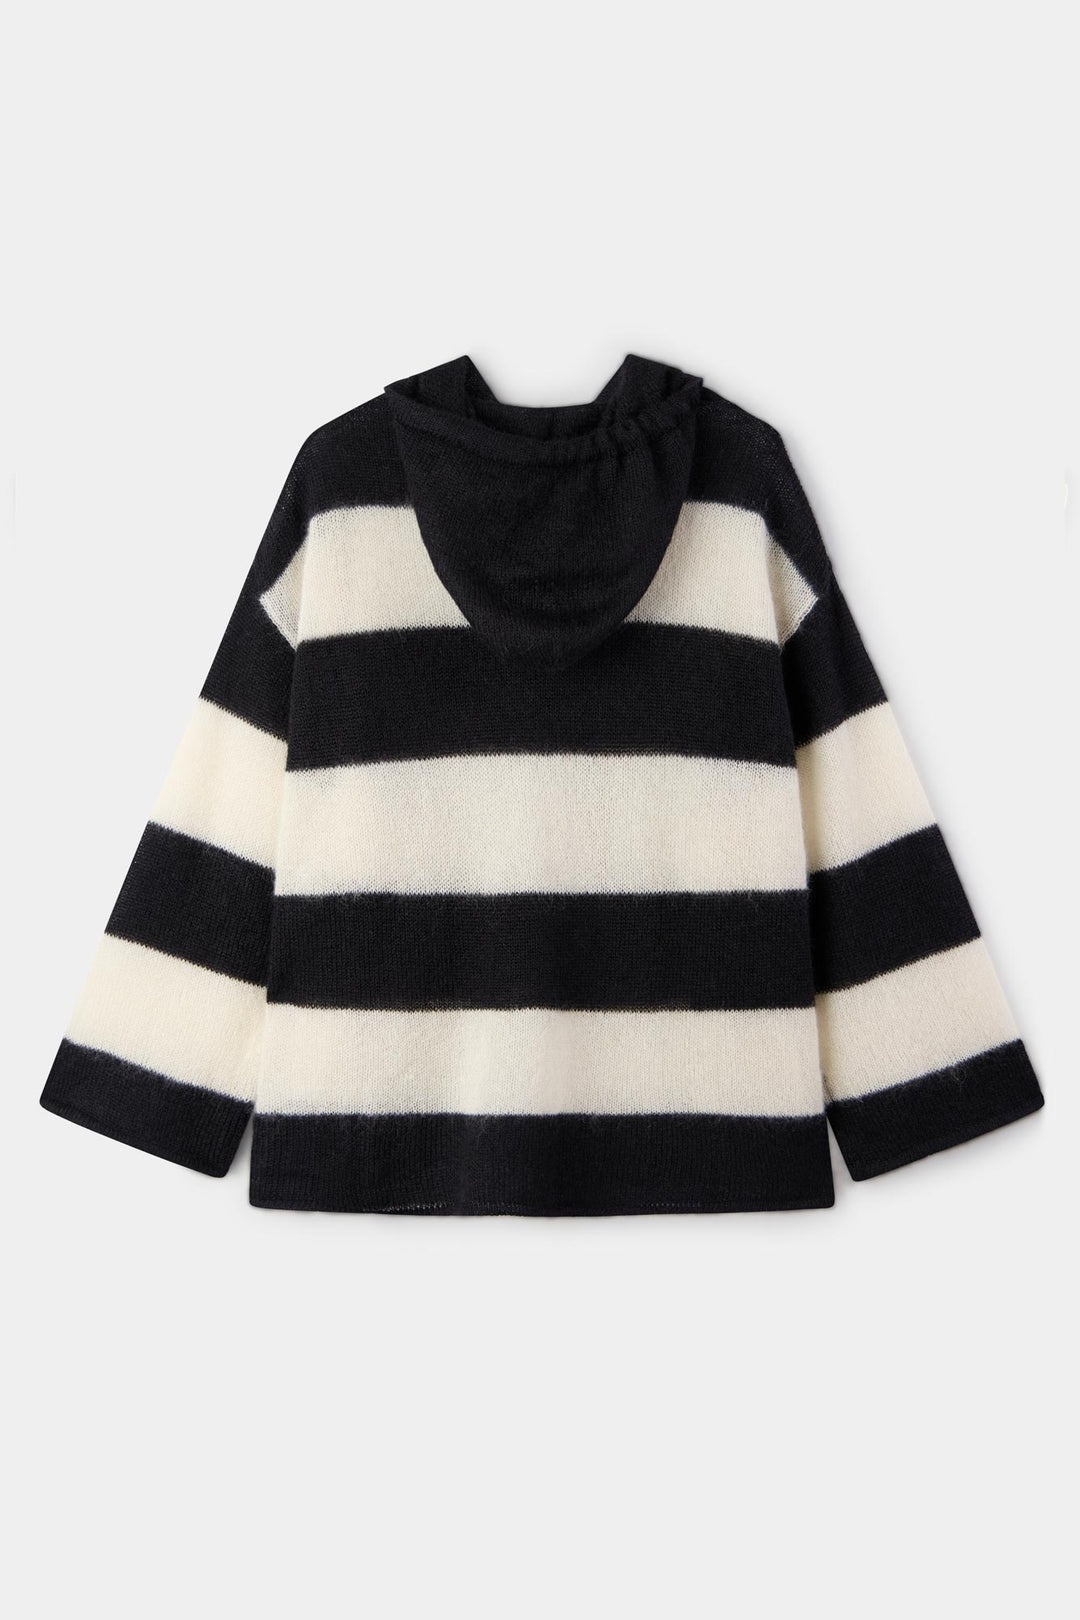 HOODIE / wool / cream & black stripes - 4